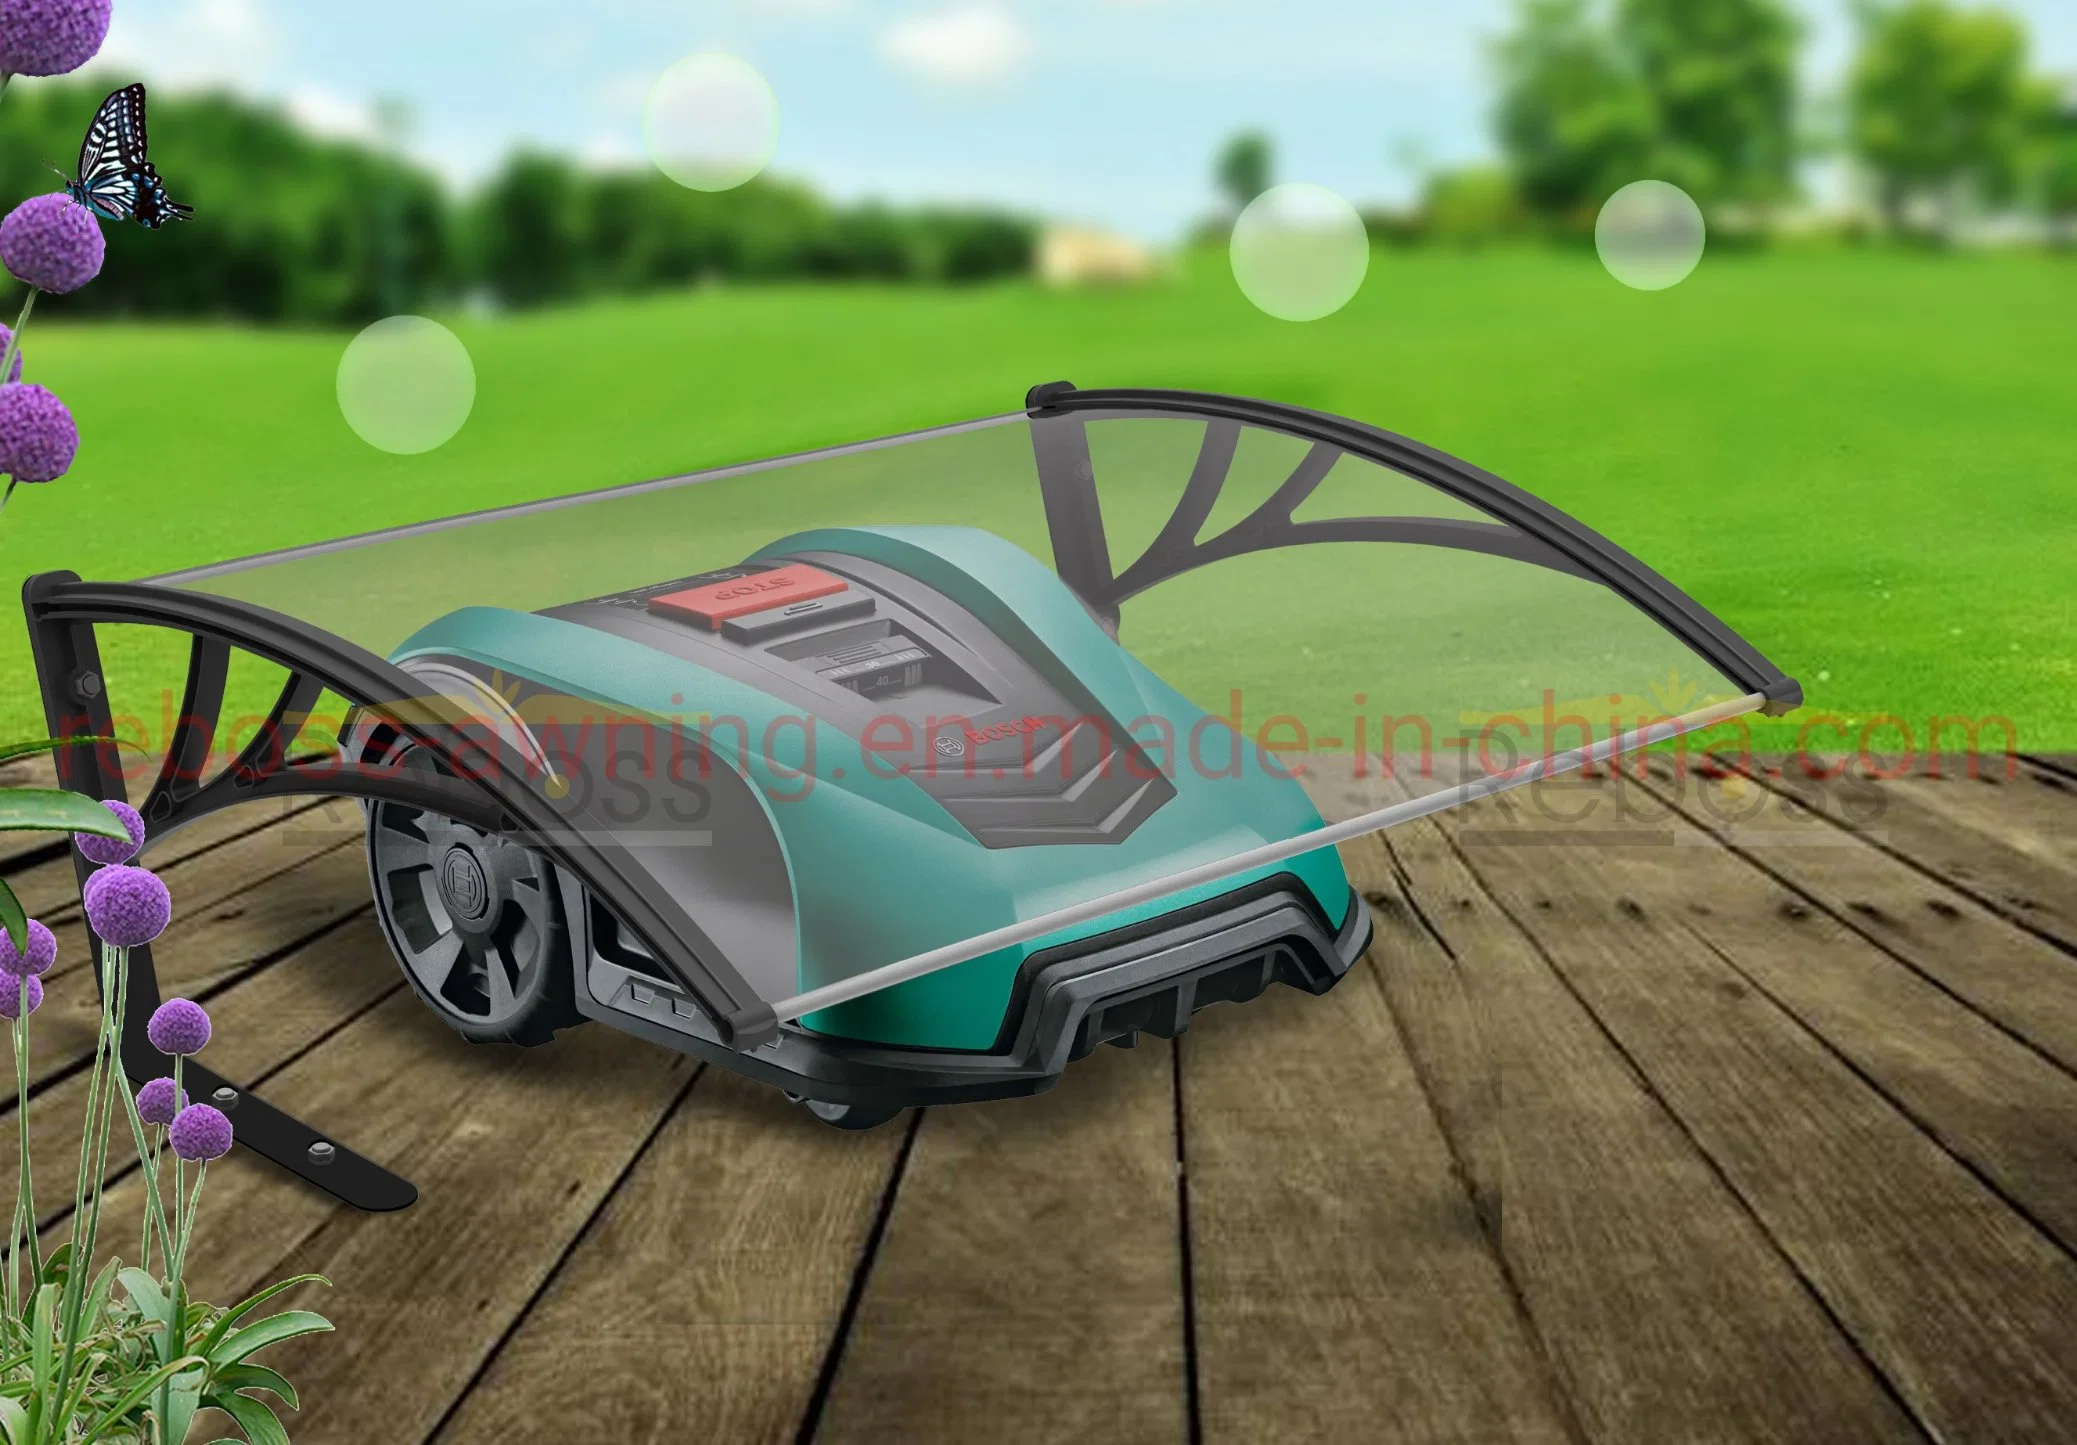 Shelter for Robot Lawn Mower Intelligent Grass Cutter